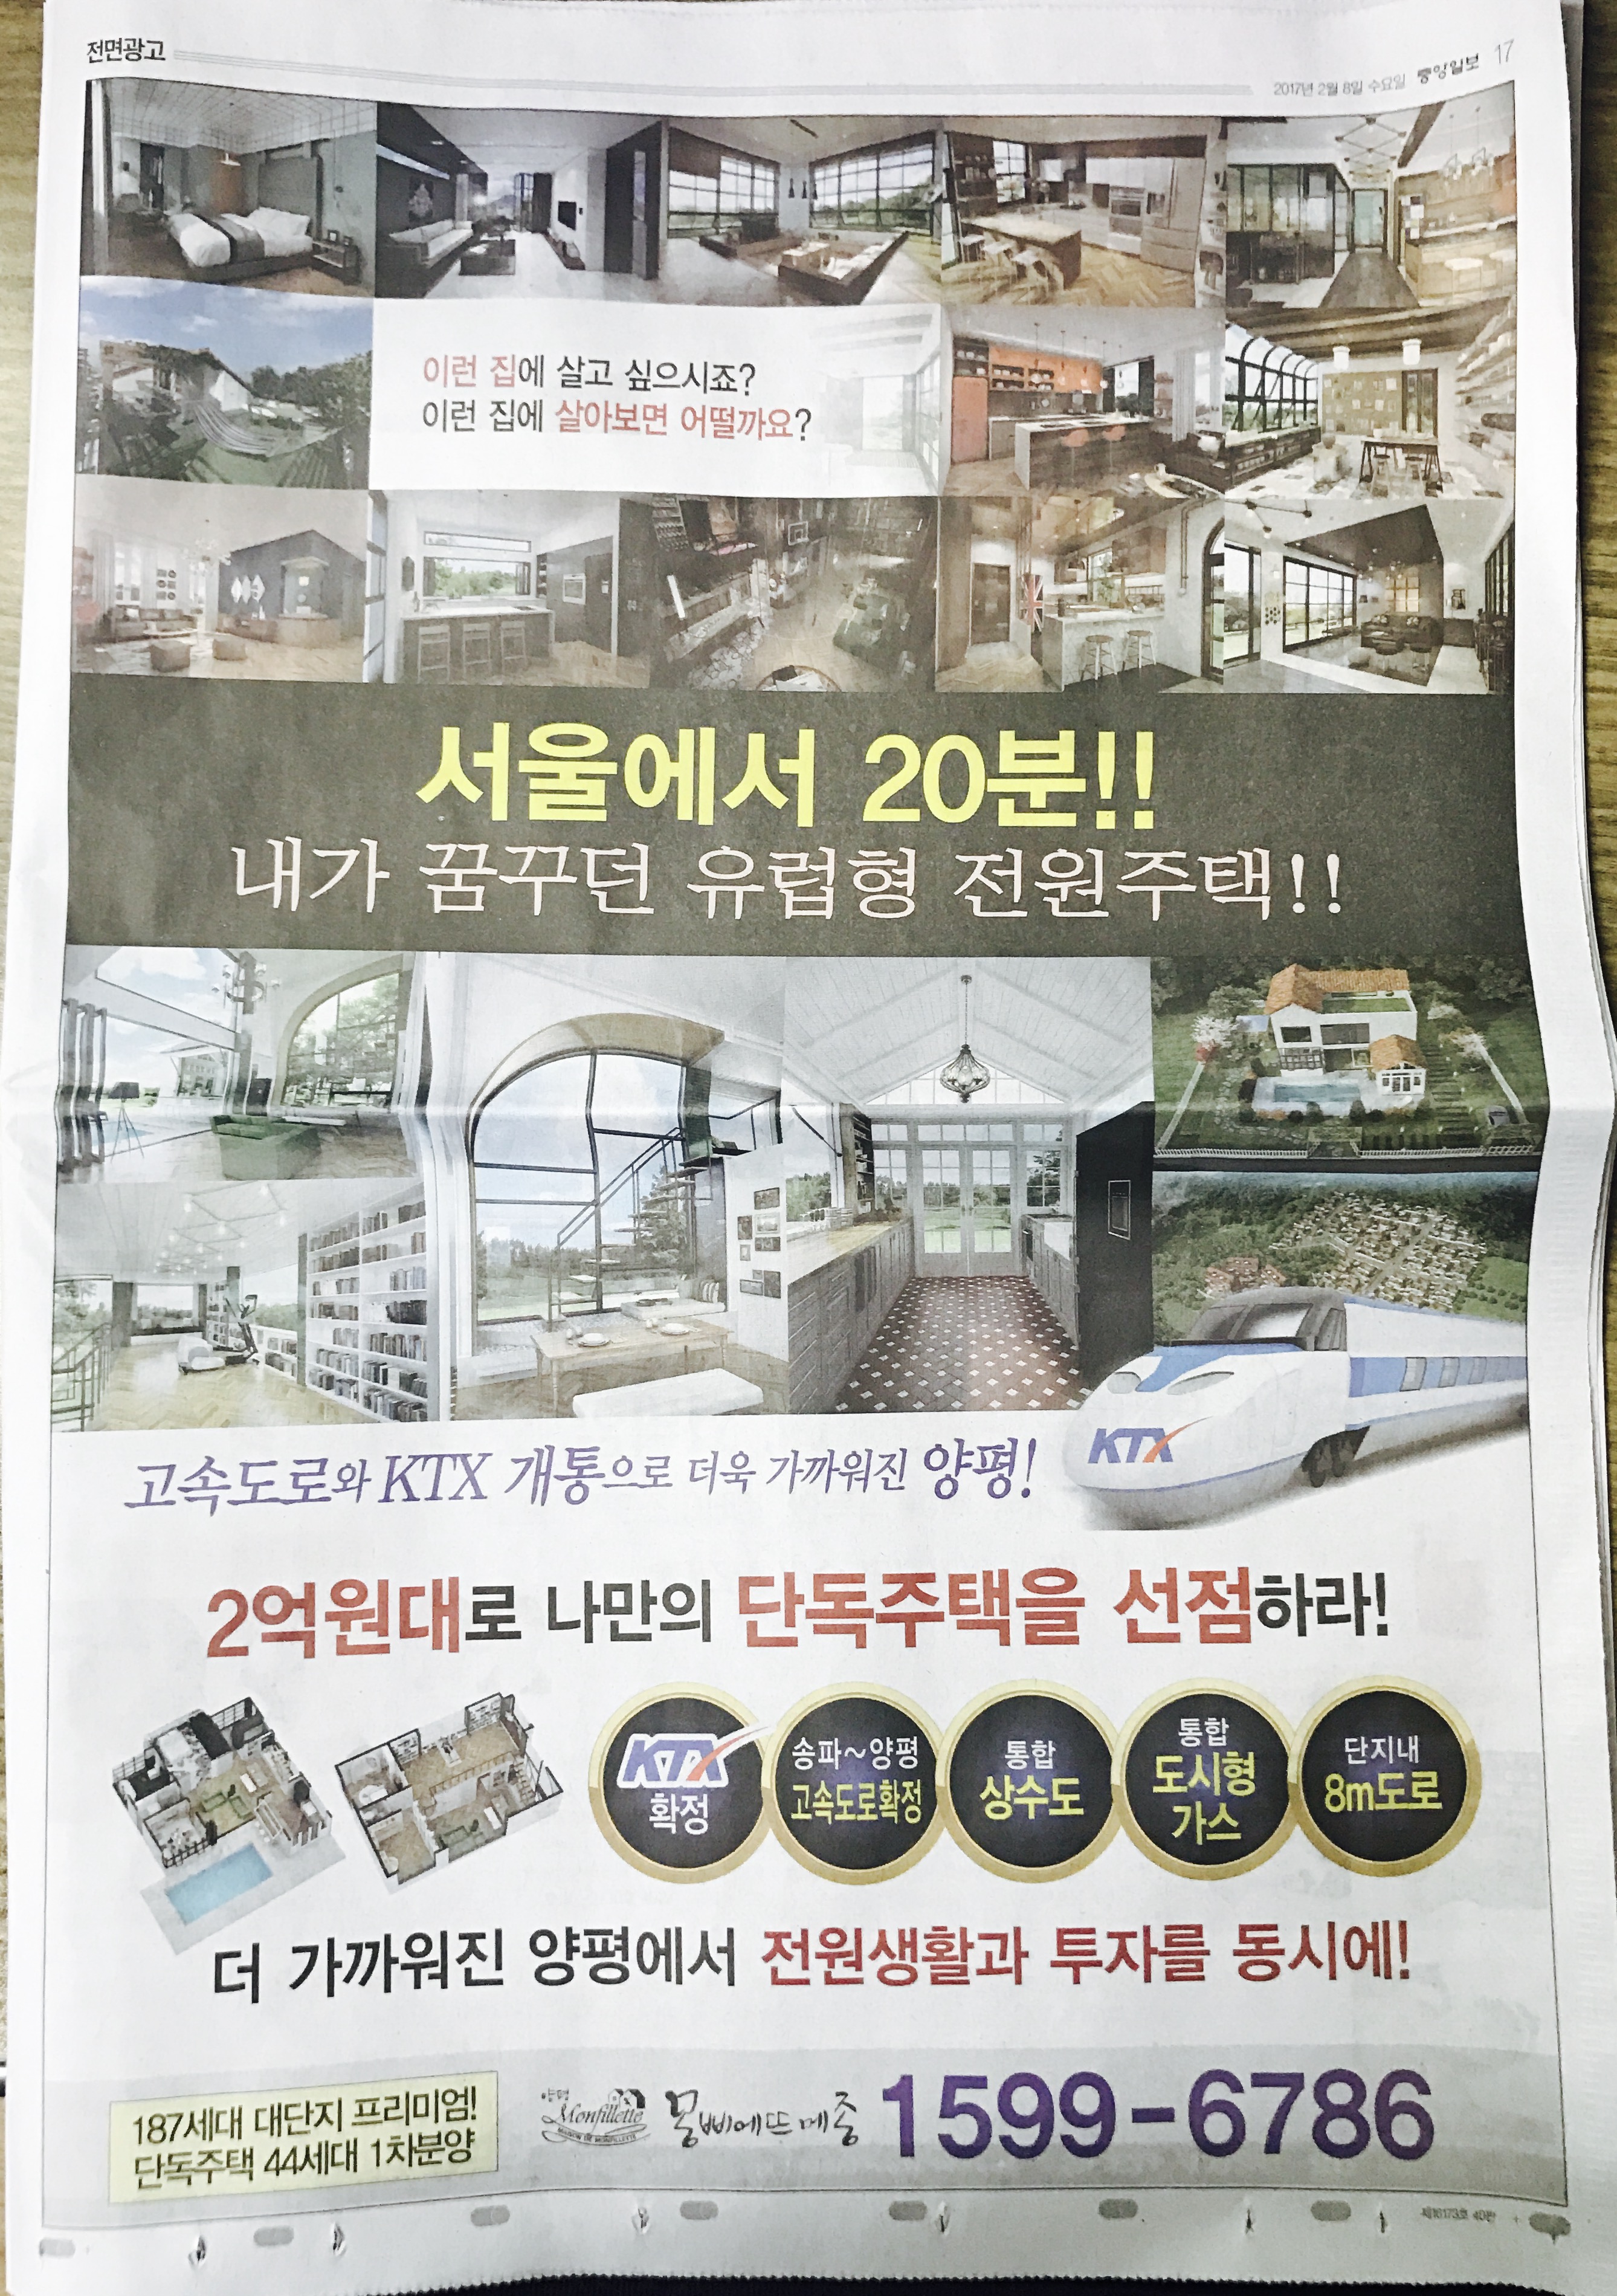 2월 8일 중앙일보 17 양평 몽삐에뜨메종 (전면).jpg